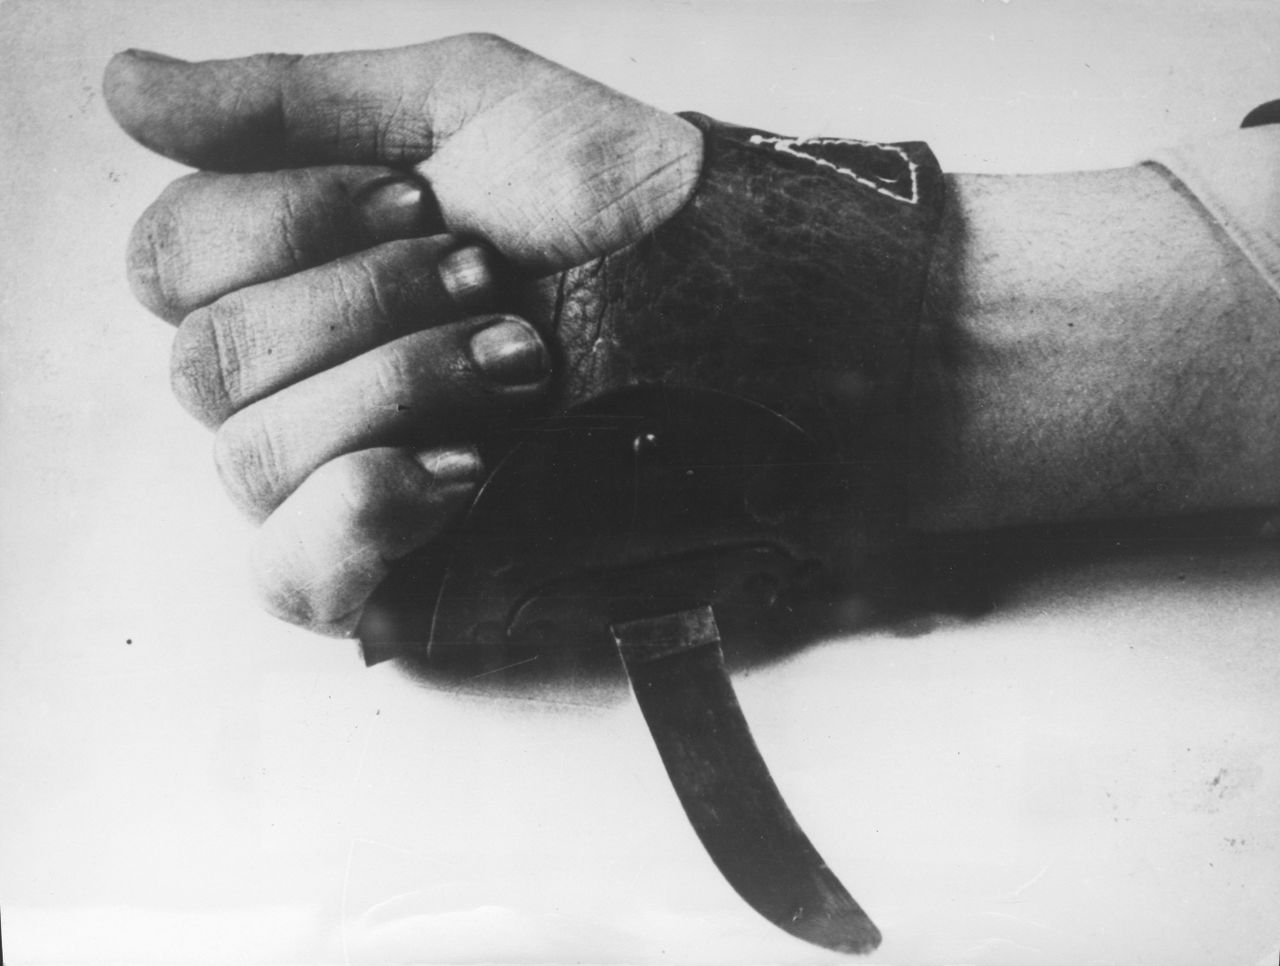 Cuchillo 'srbosjek', utilizado por los ustachas croatas en los campos de exterminio.